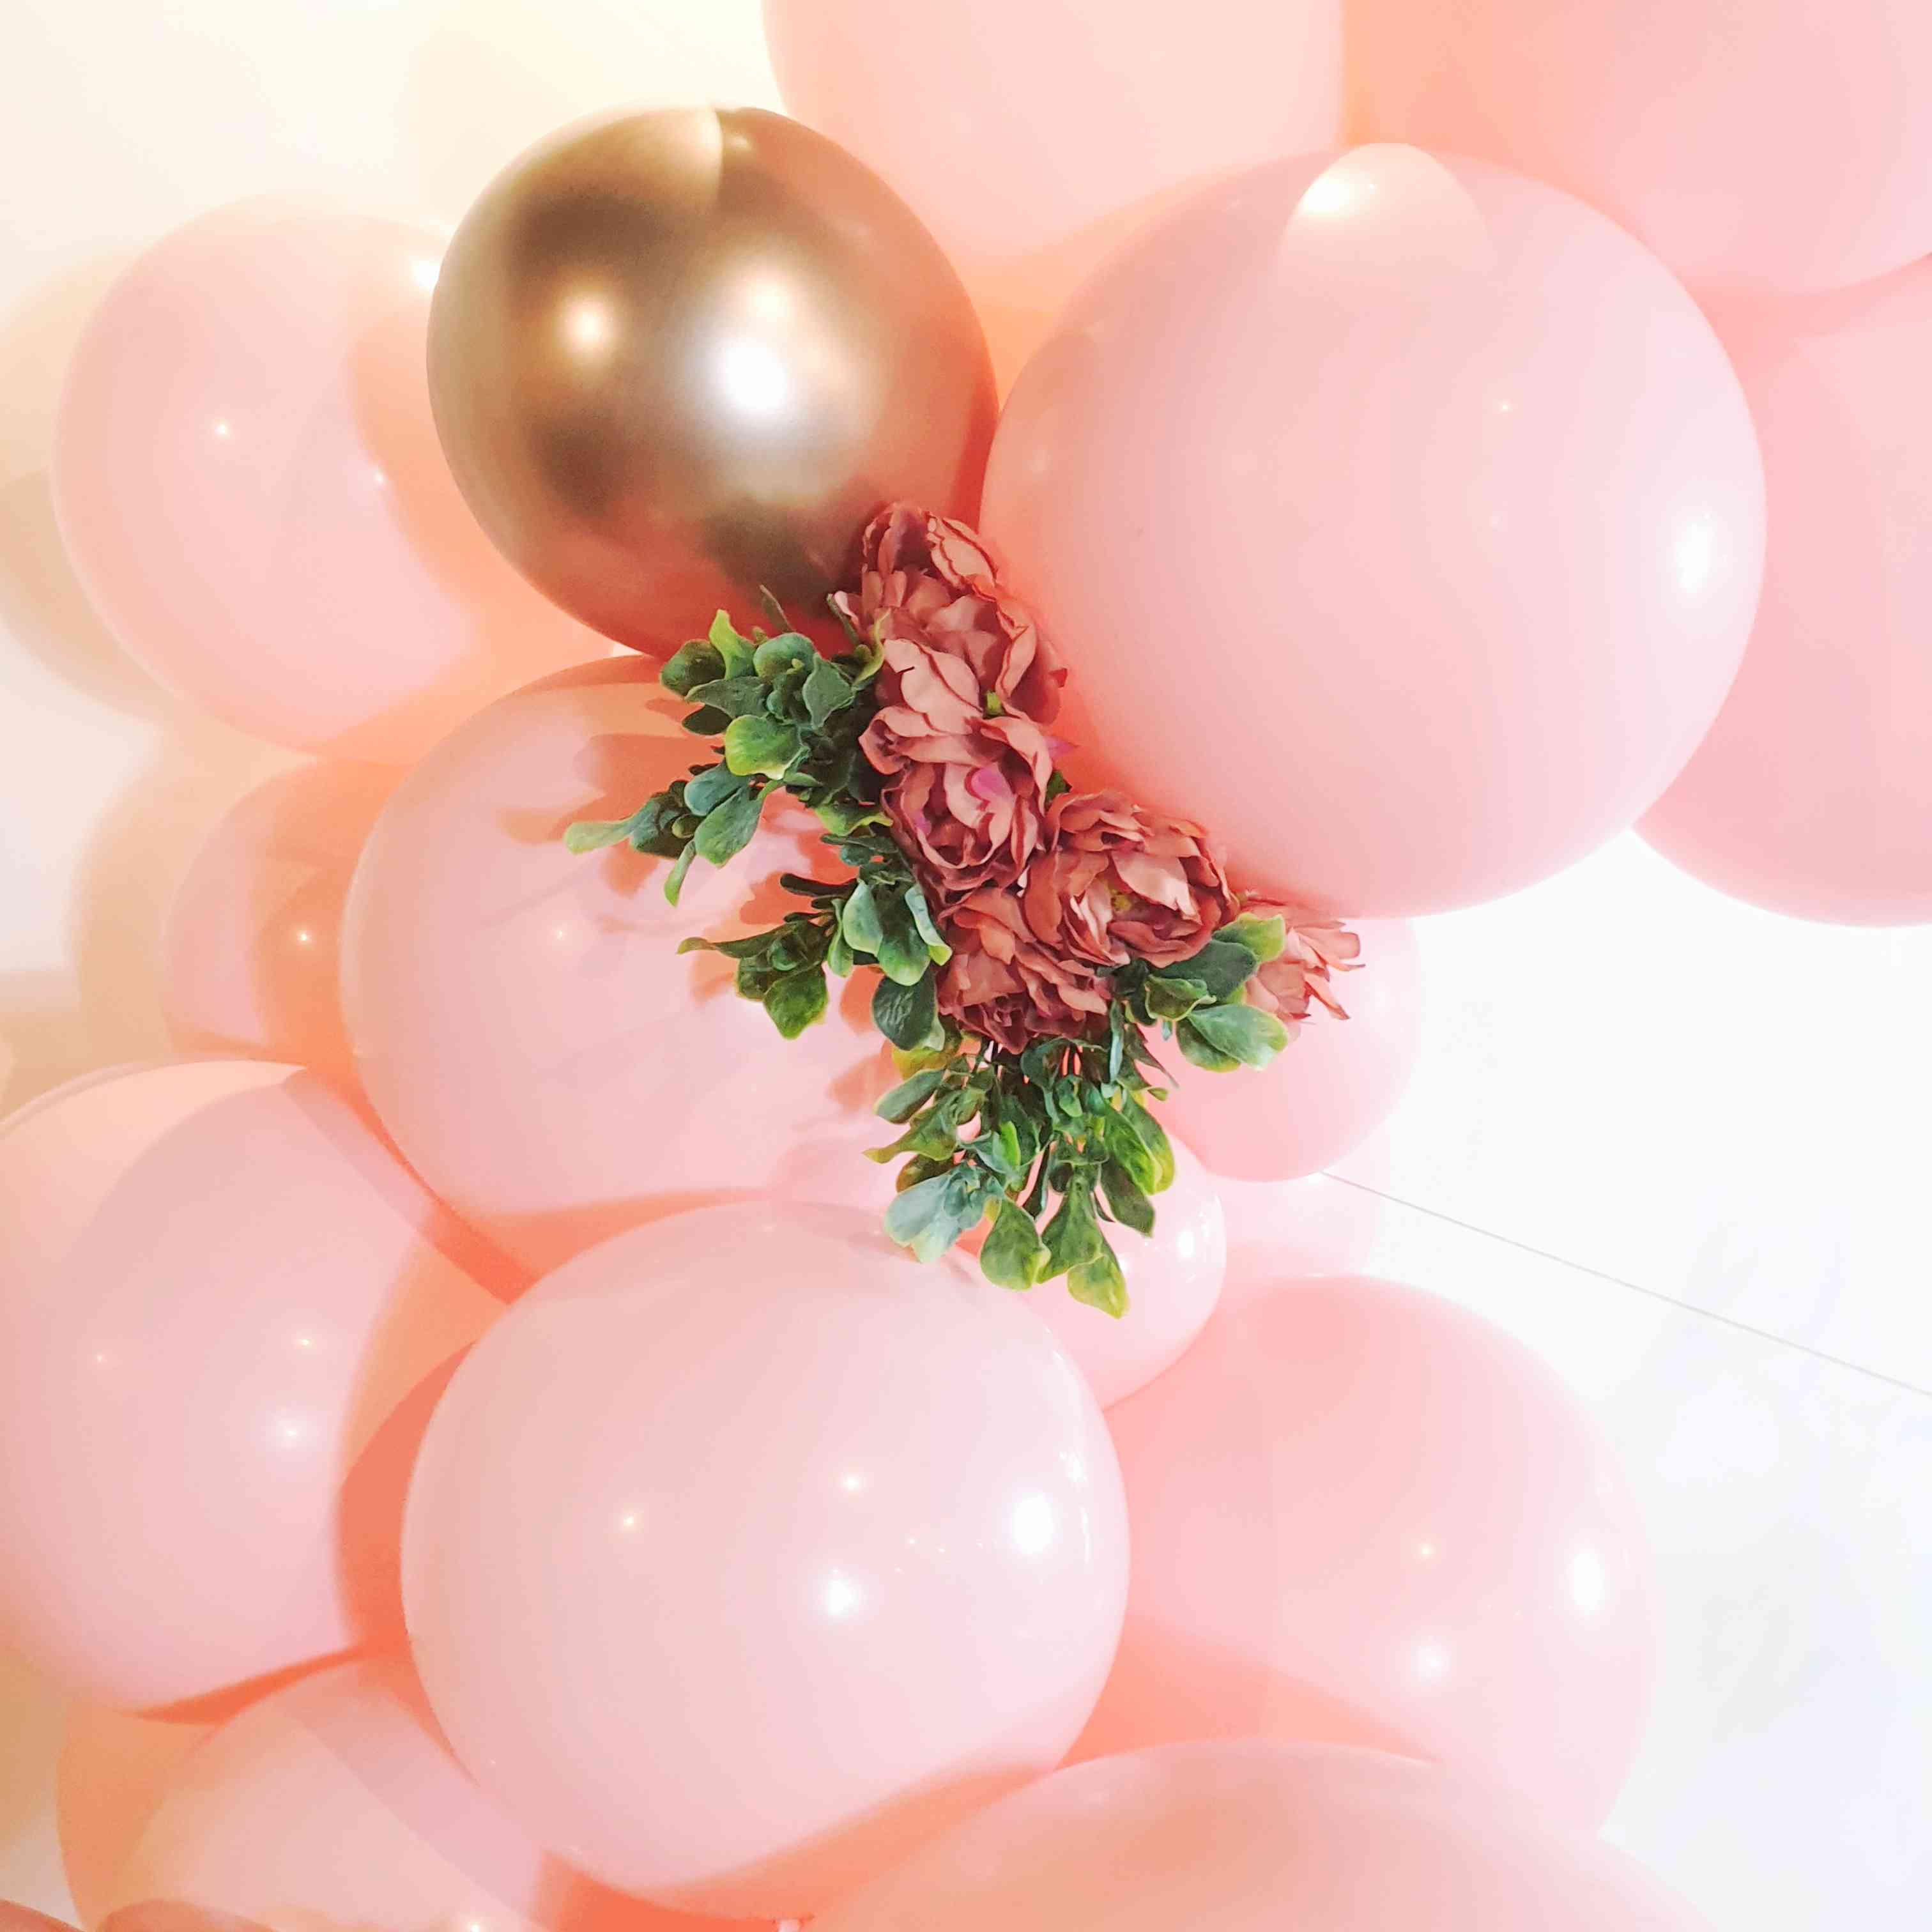 Arche de ballon rose : 70 ballons + rosaces et boules alvéolées